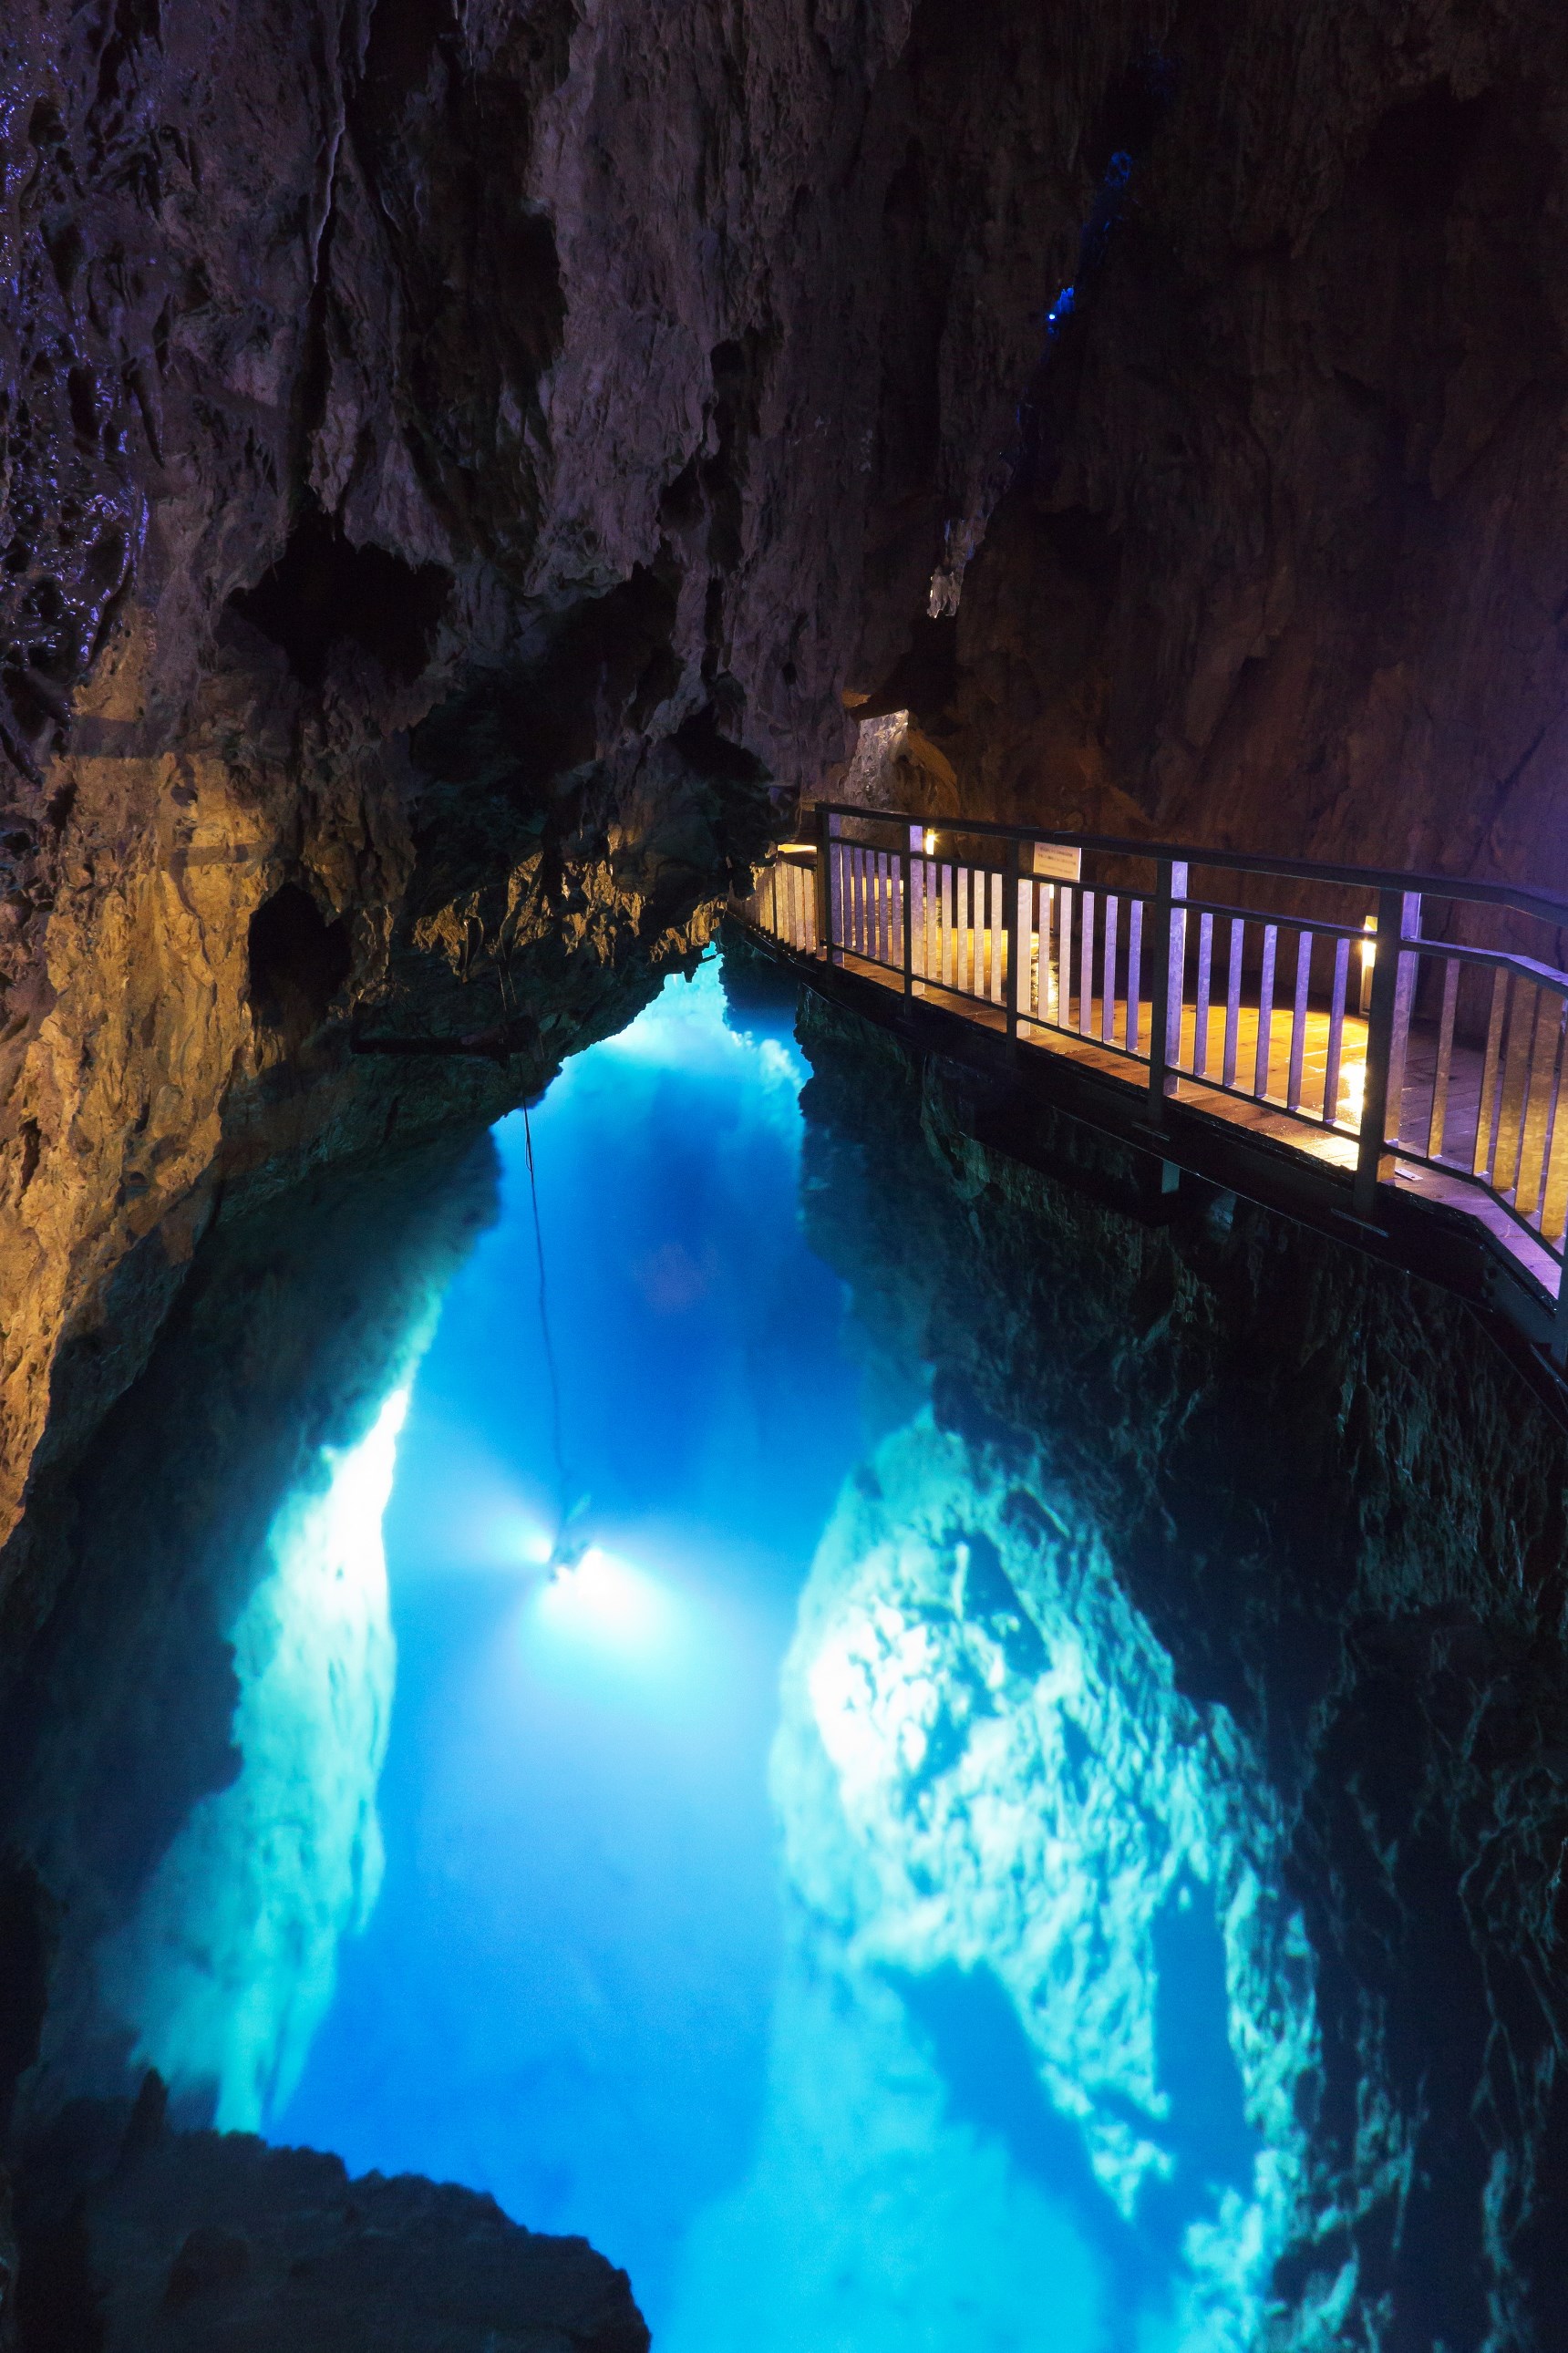 日本三大鍾乳洞のひとつ「龍泉洞」